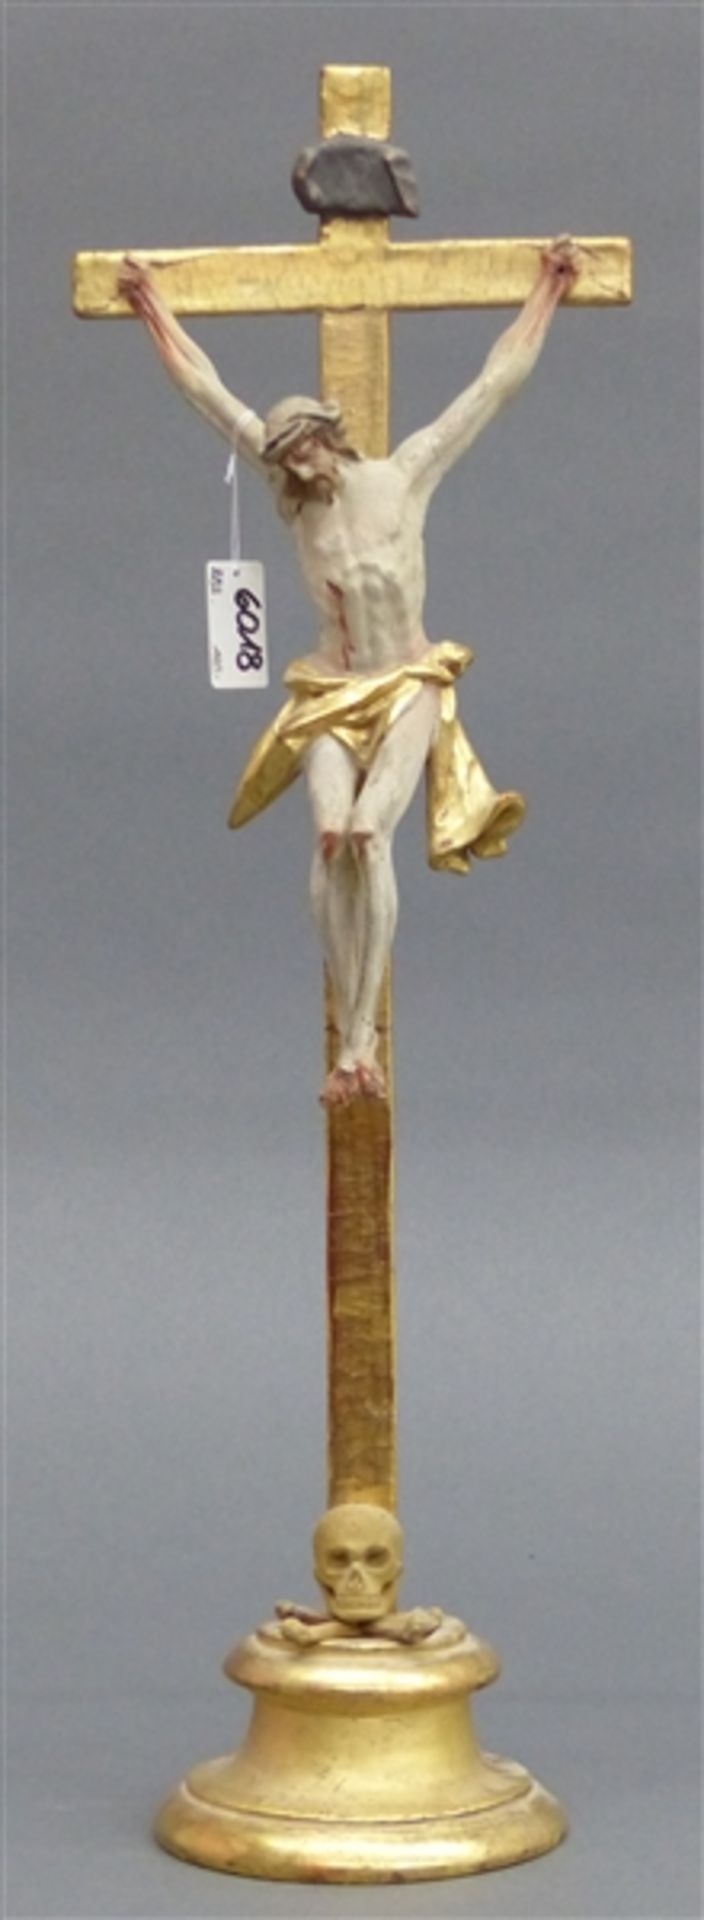 Standkreuz mit geschnitztem und gefasstem Kruzifix, Deutsch, 19. Jh., Kreuz vergoldet, Korpushöhe 21